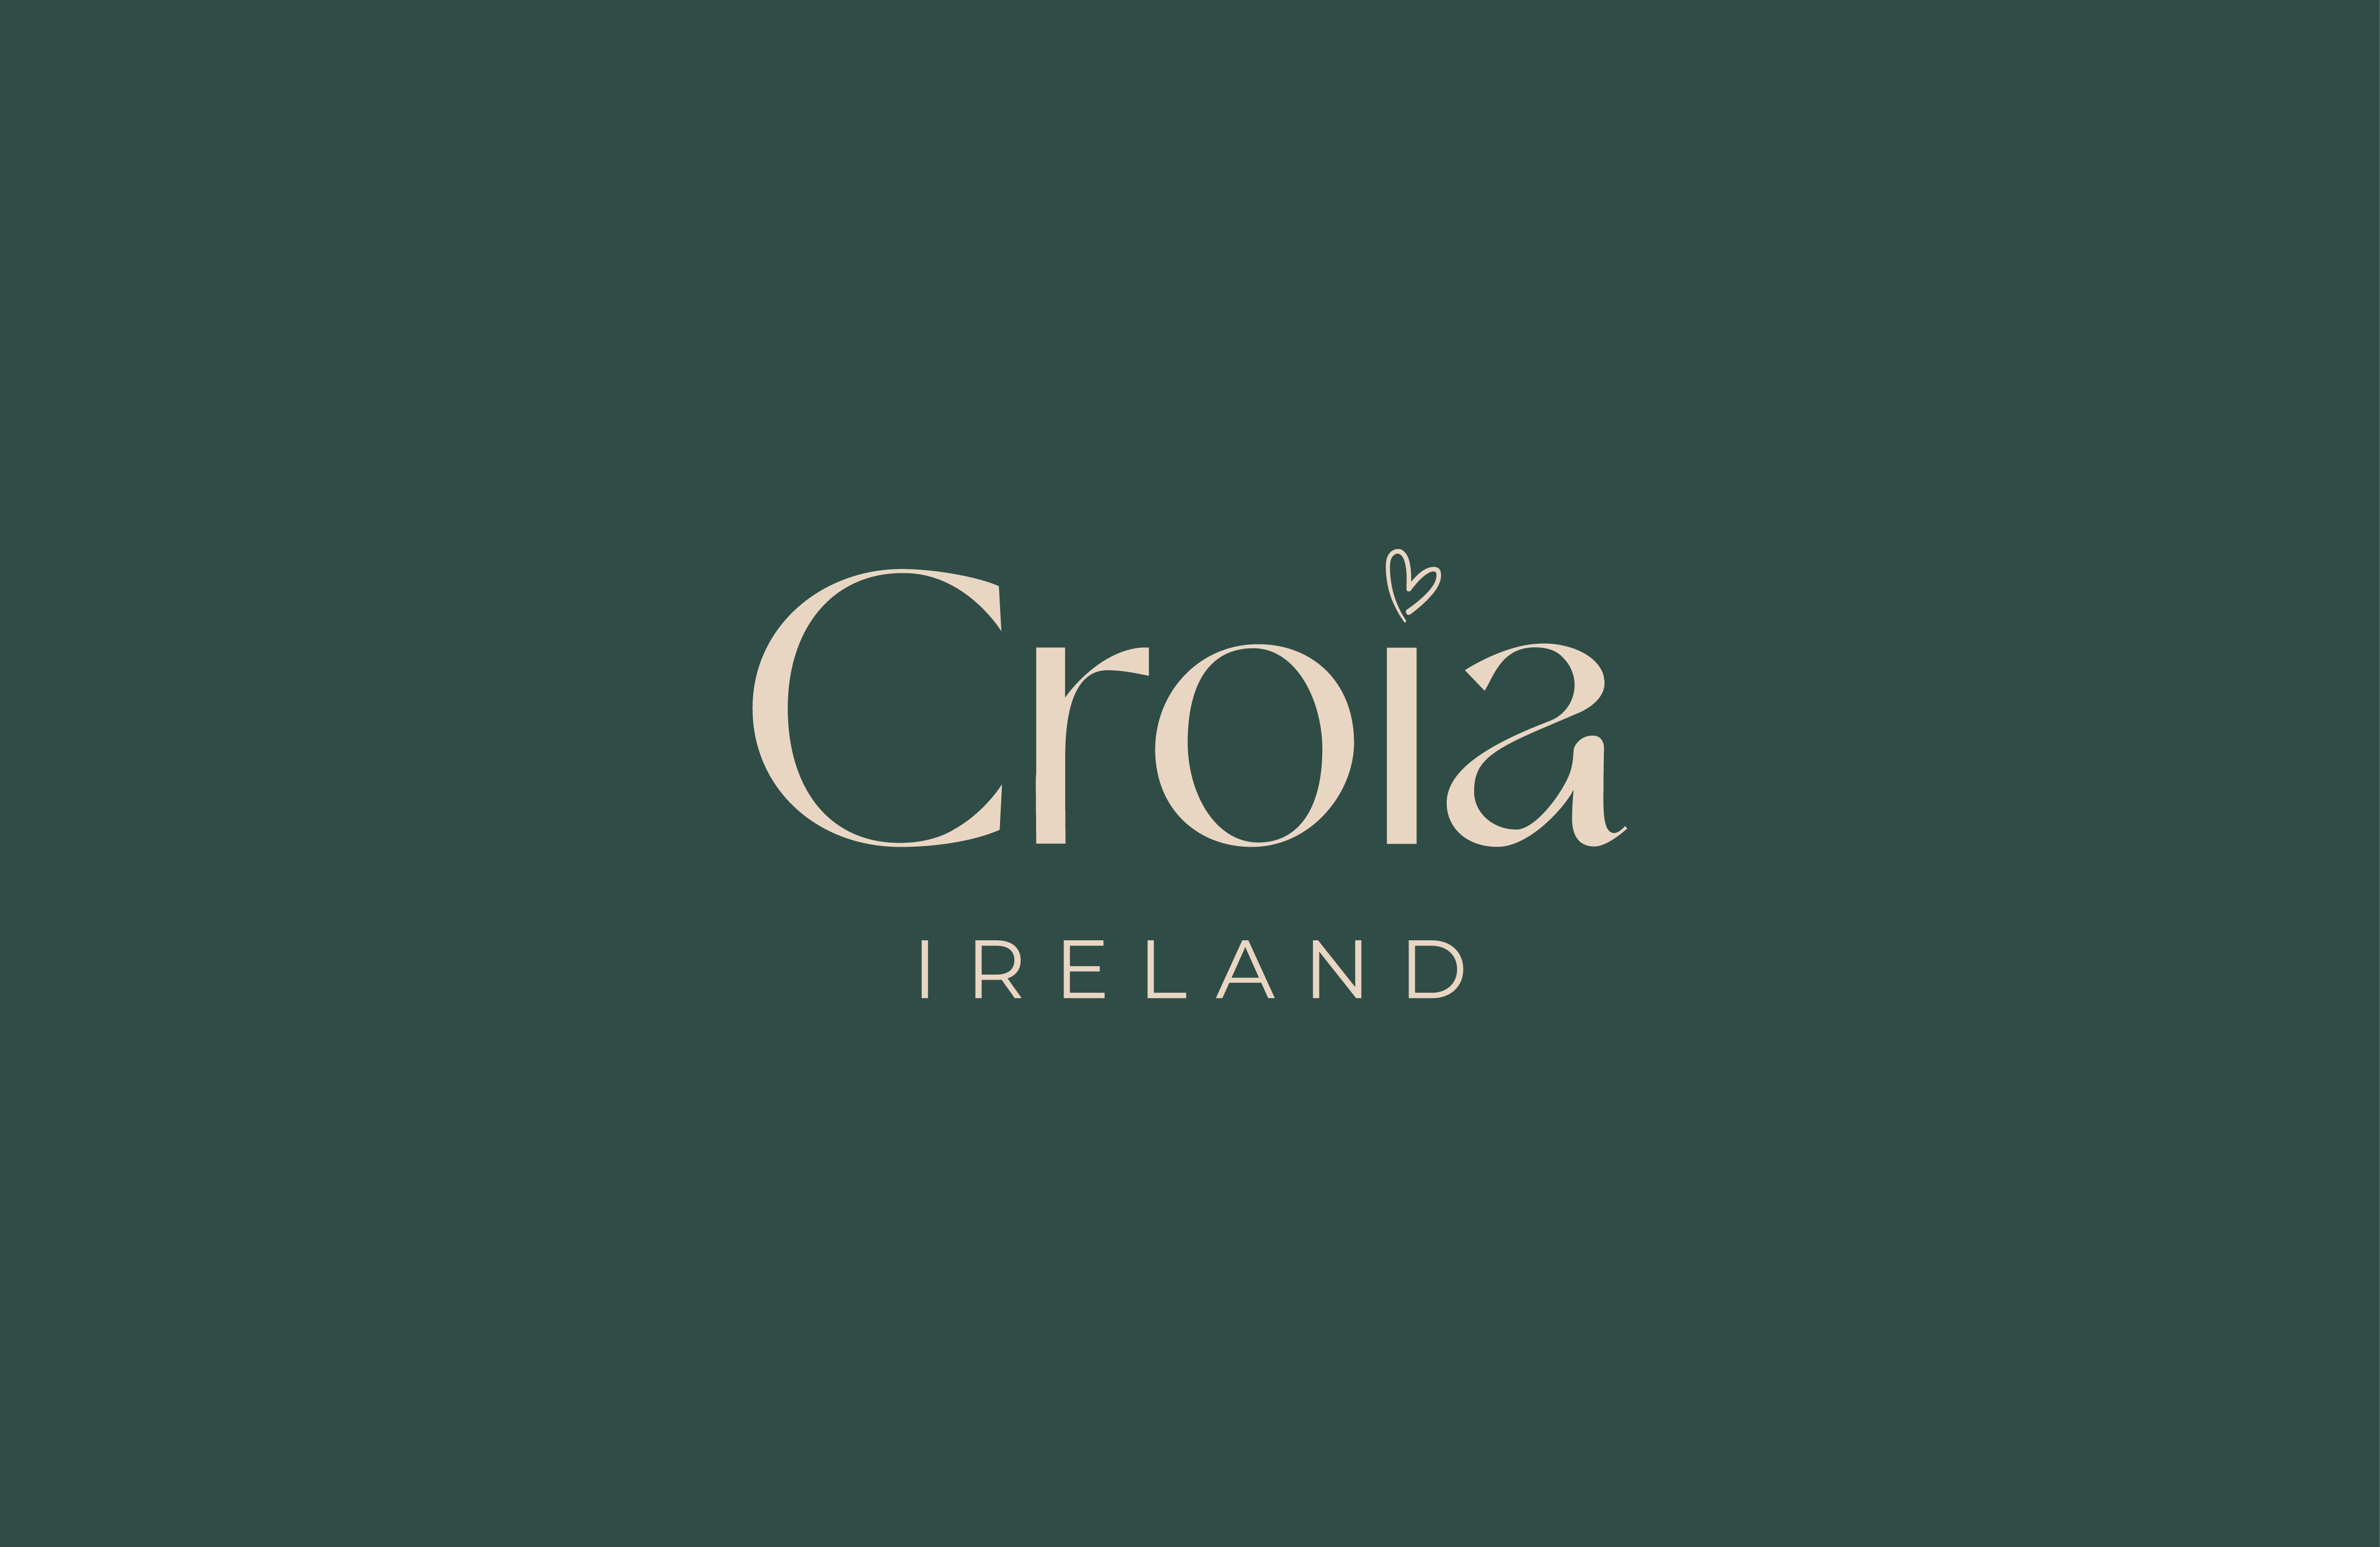 Cover image: Croía Ireland